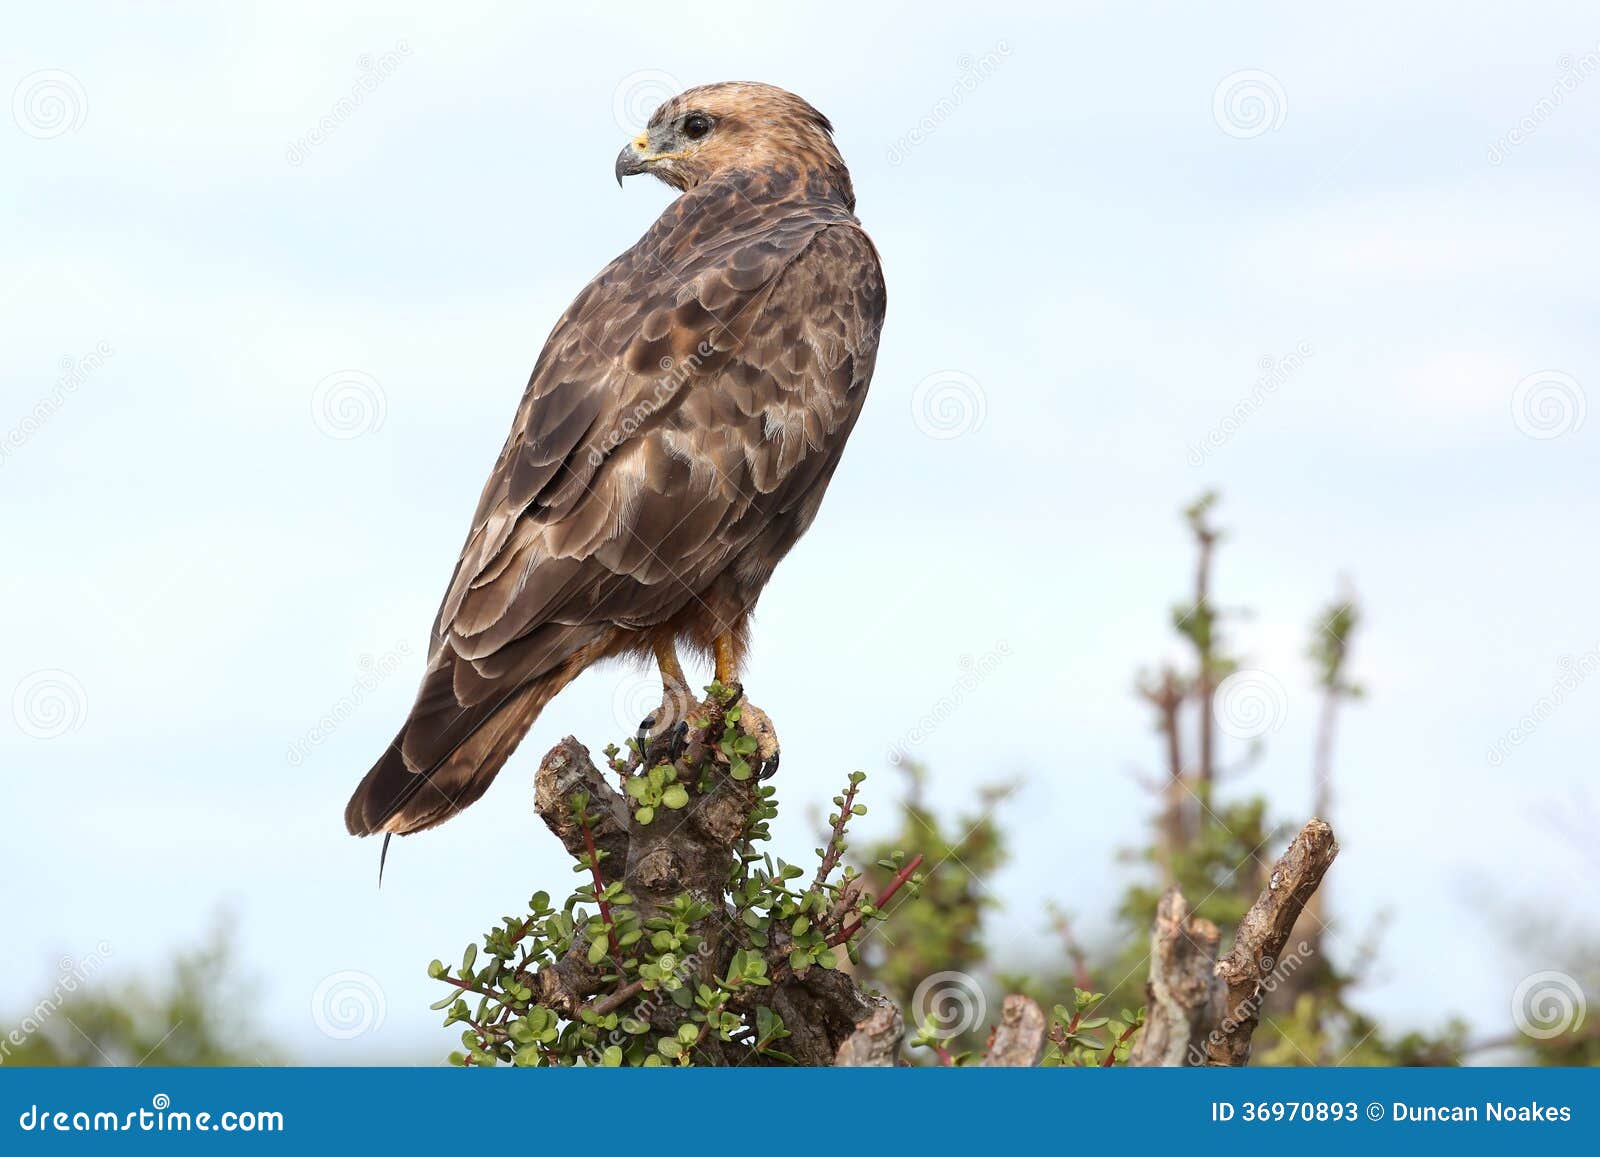 Steppe Buzzard Bird Of Prey Stock Photos - Image: 36970893